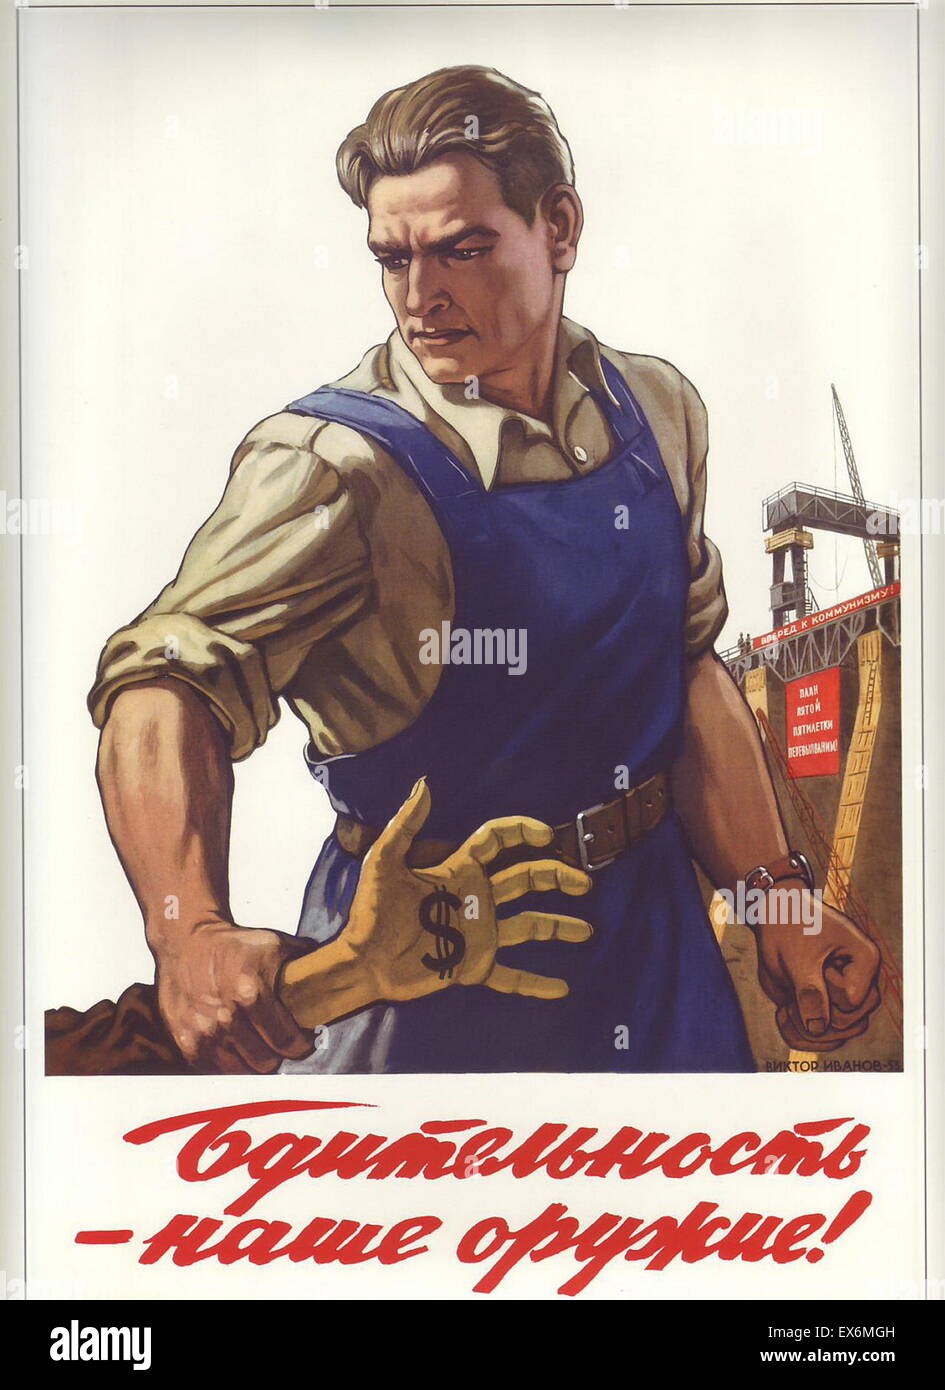 Viktor Ivanovo affiche de propagande communiste russe : la vigilance est notre arme ! Moscou 1953 Banque D'Images